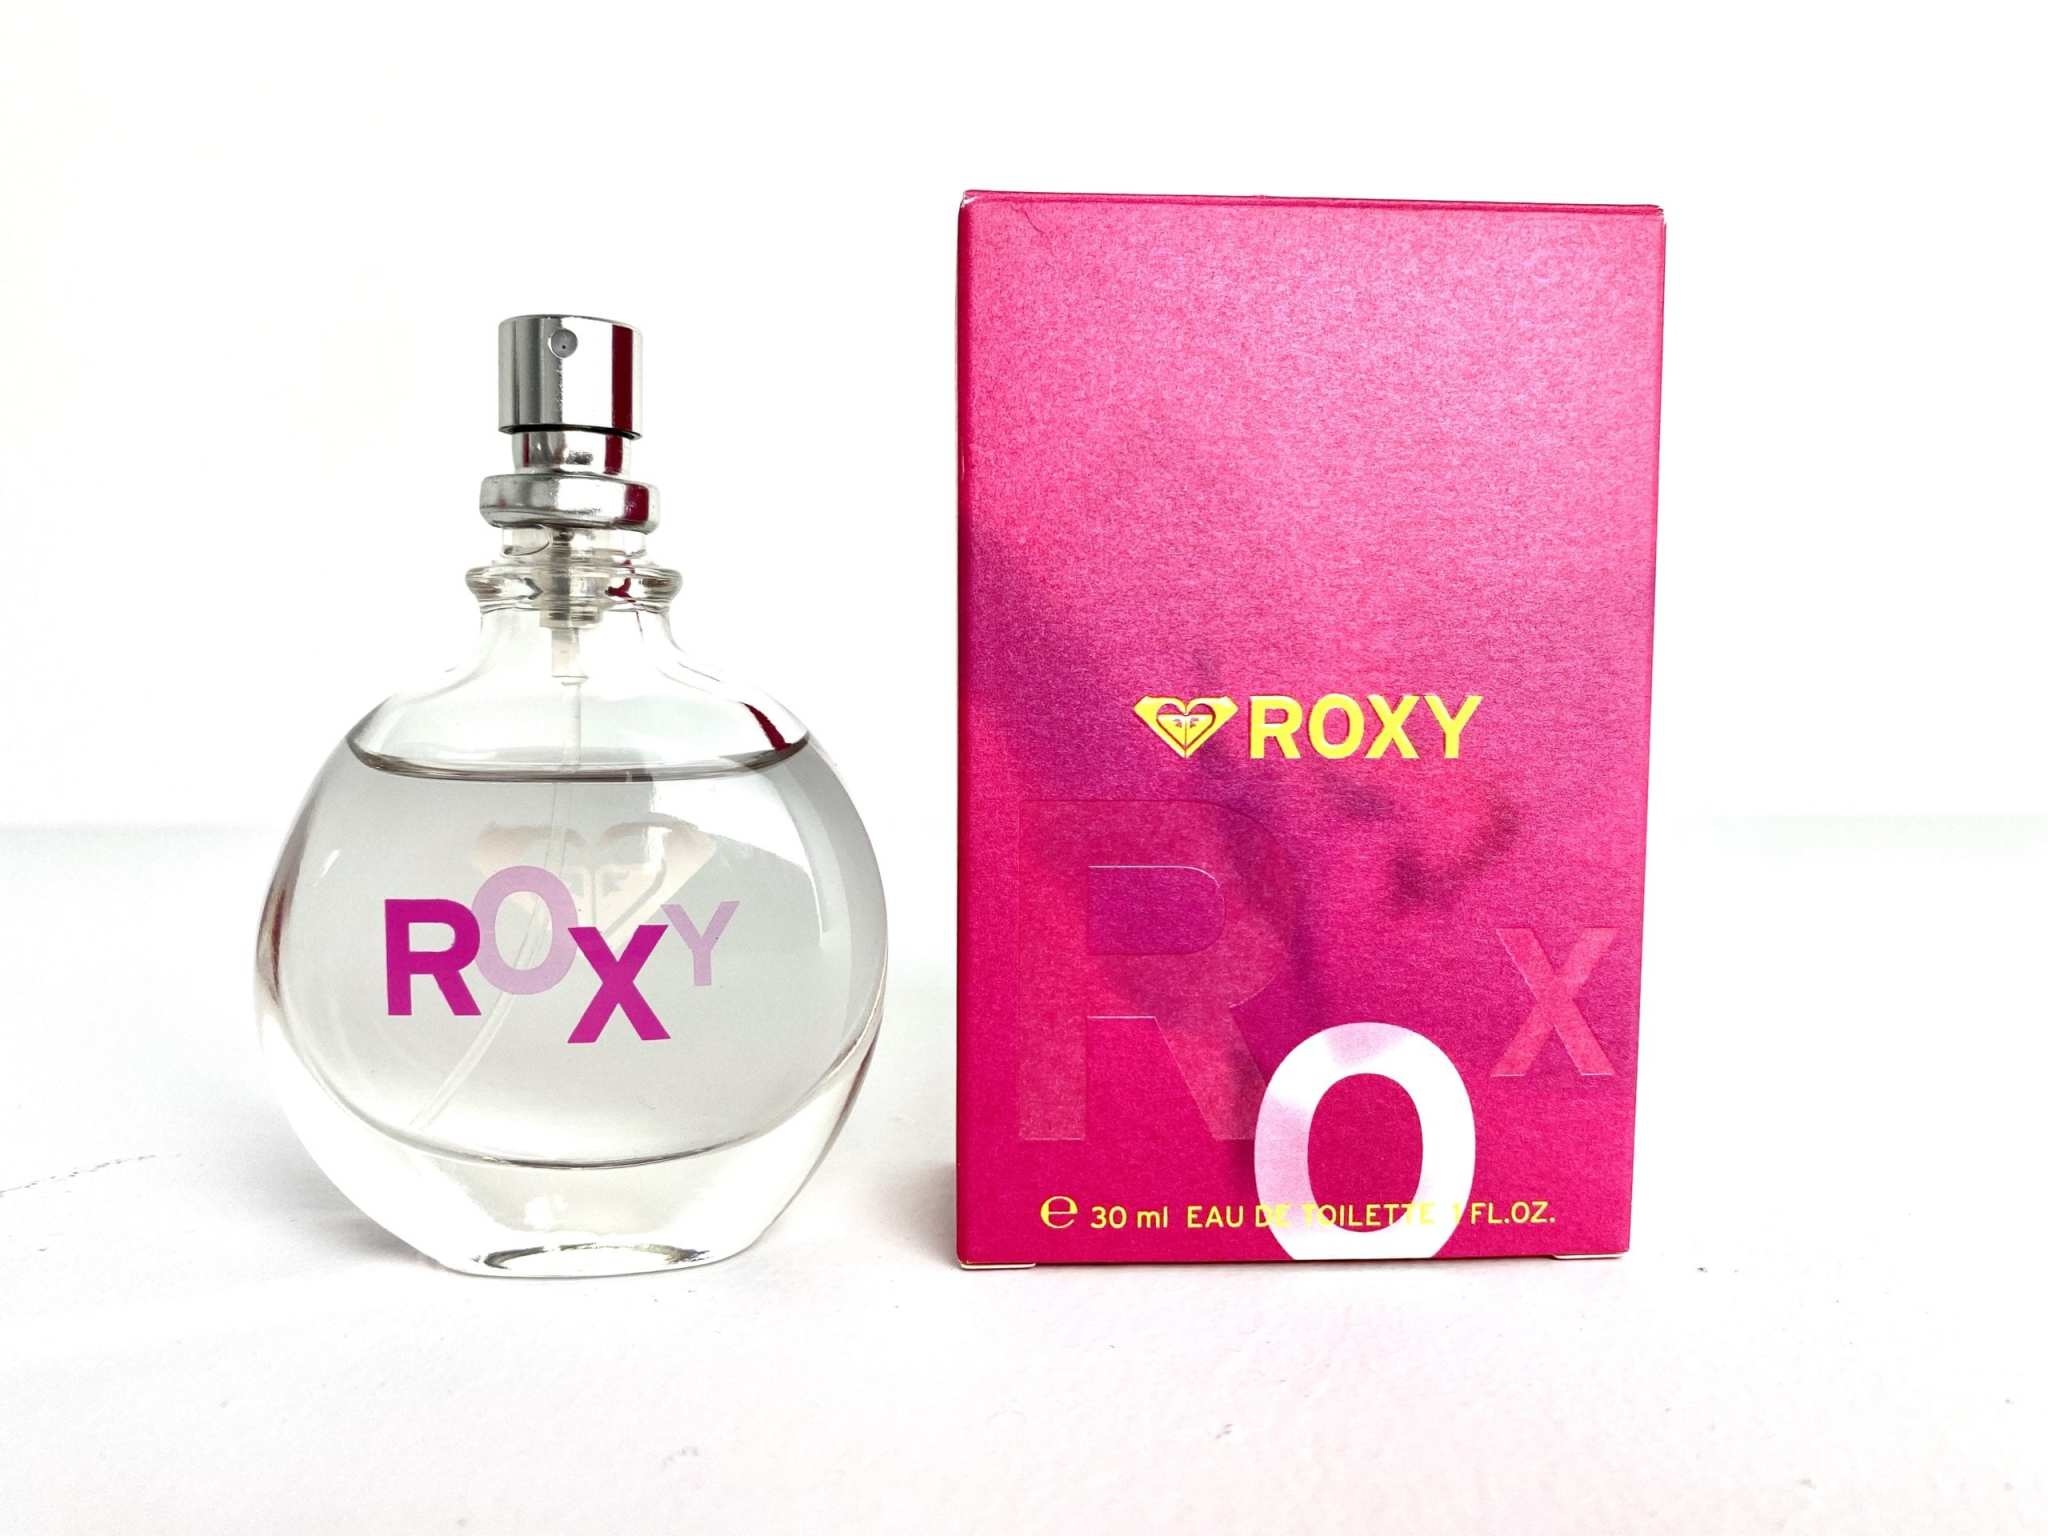 Quiksilver Roxy For Women Eau de Toilette - Le Parfumier Perfume Store